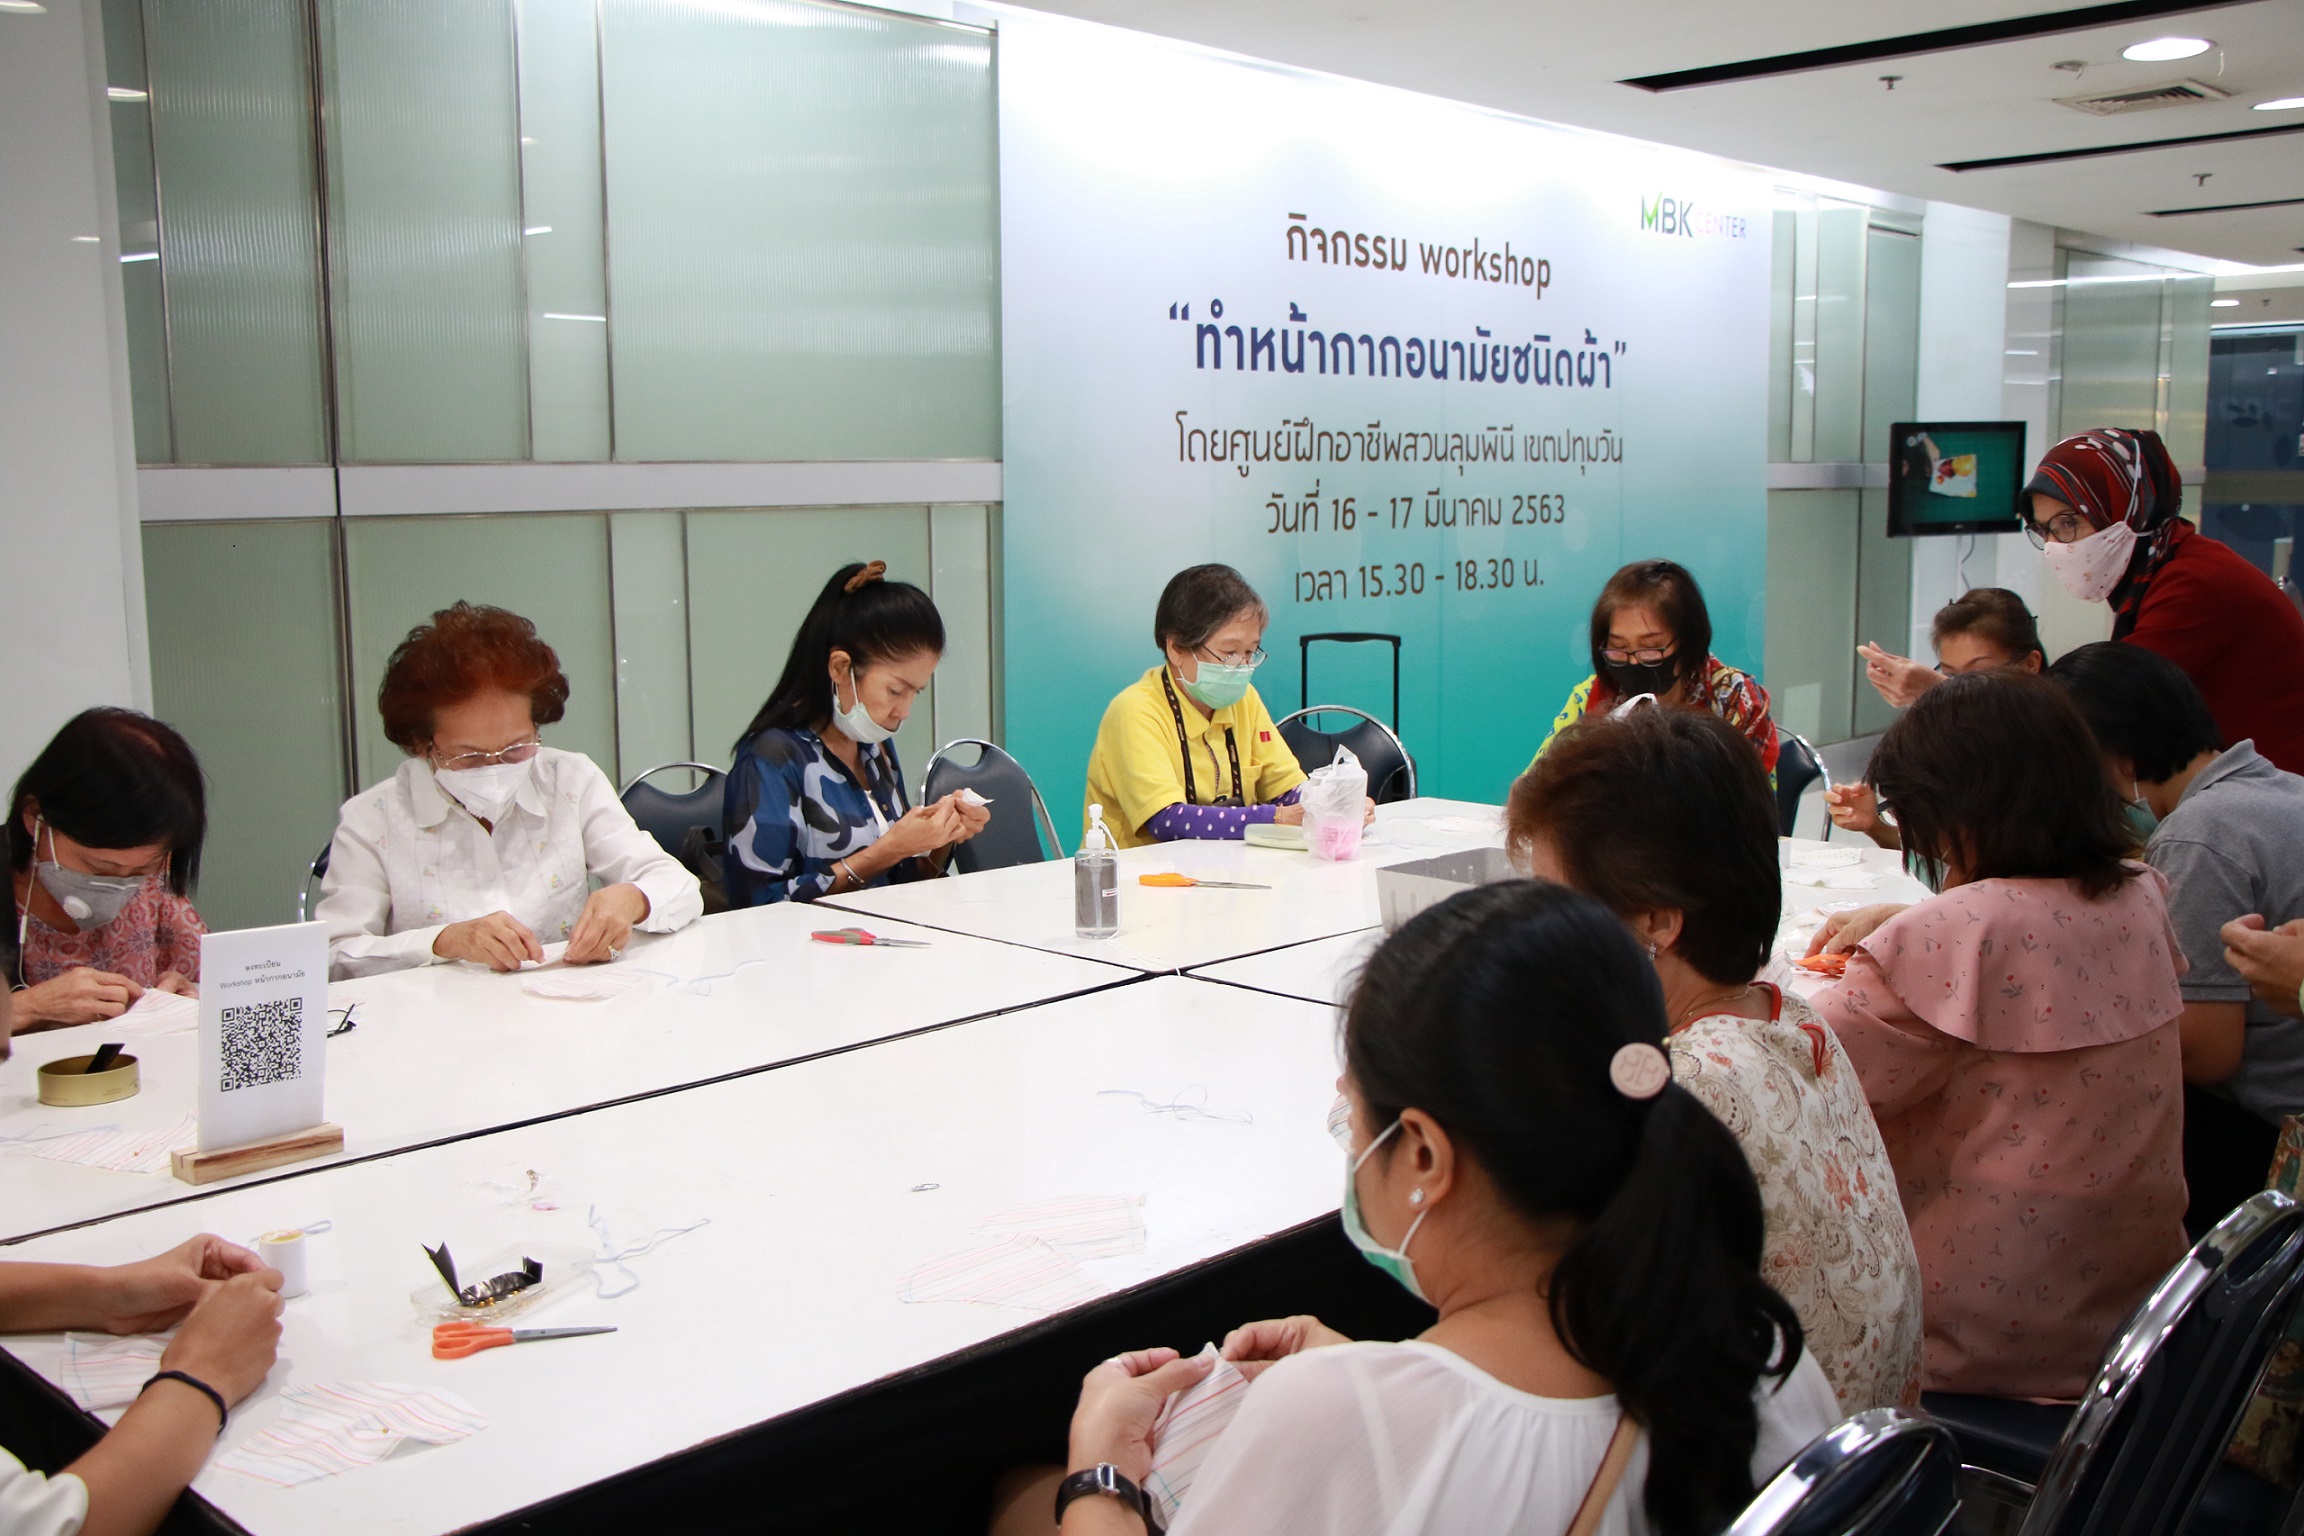 ศูนย์การค้าเครือเอ็ม บี เค ร่วมกับ ศูนย์ฝึกอาชีพกรุงเทพมหานคร สอนทำหน้ากากอนามัยแบบผ้า ส่งมอบความห่วยใย ใส่ใจสุขอนามัยของคนไทย รับมือโควิด-19